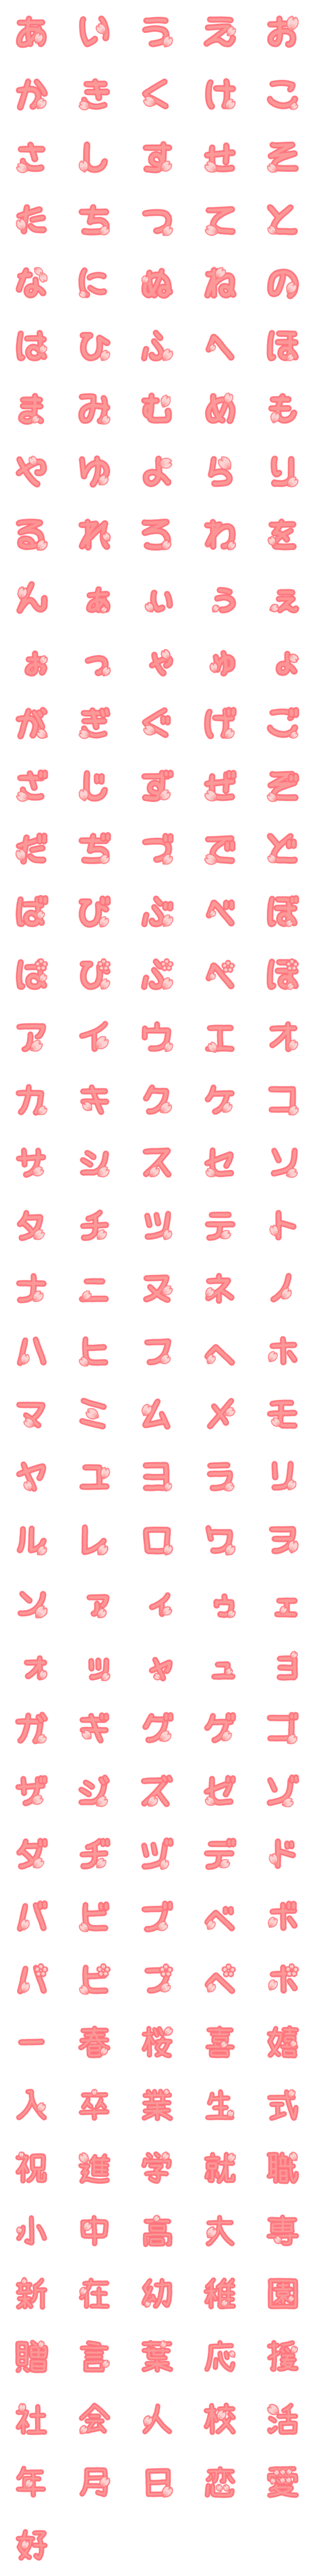 [LINE絵文字]桜の花びら舞い散るデコ絵文字★ひらカタ漢の画像一覧